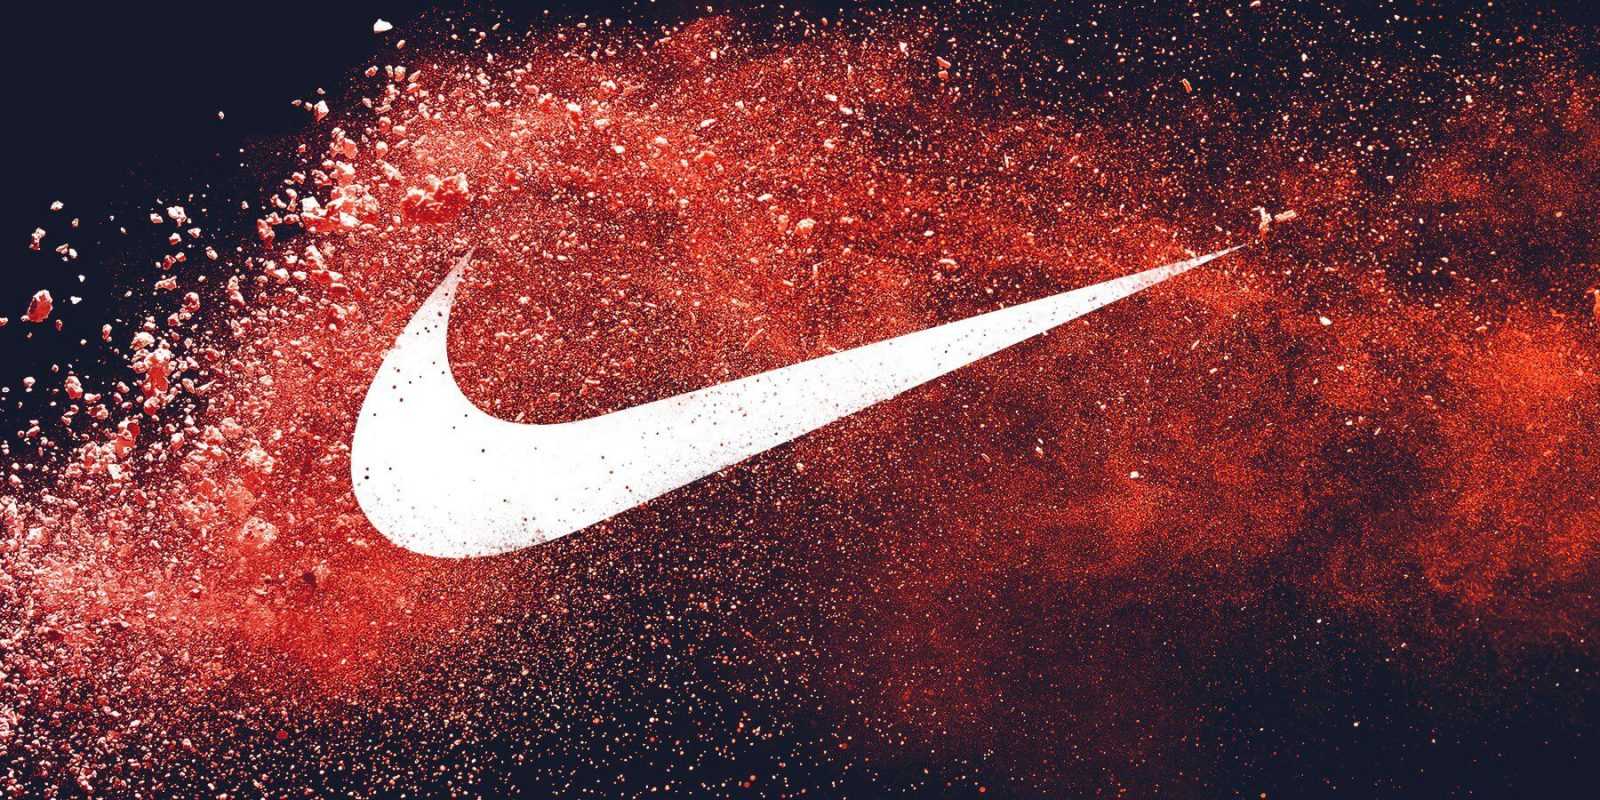 Báo cáo Thu nhập của Nike. Điều gì sẽ xảy ra?